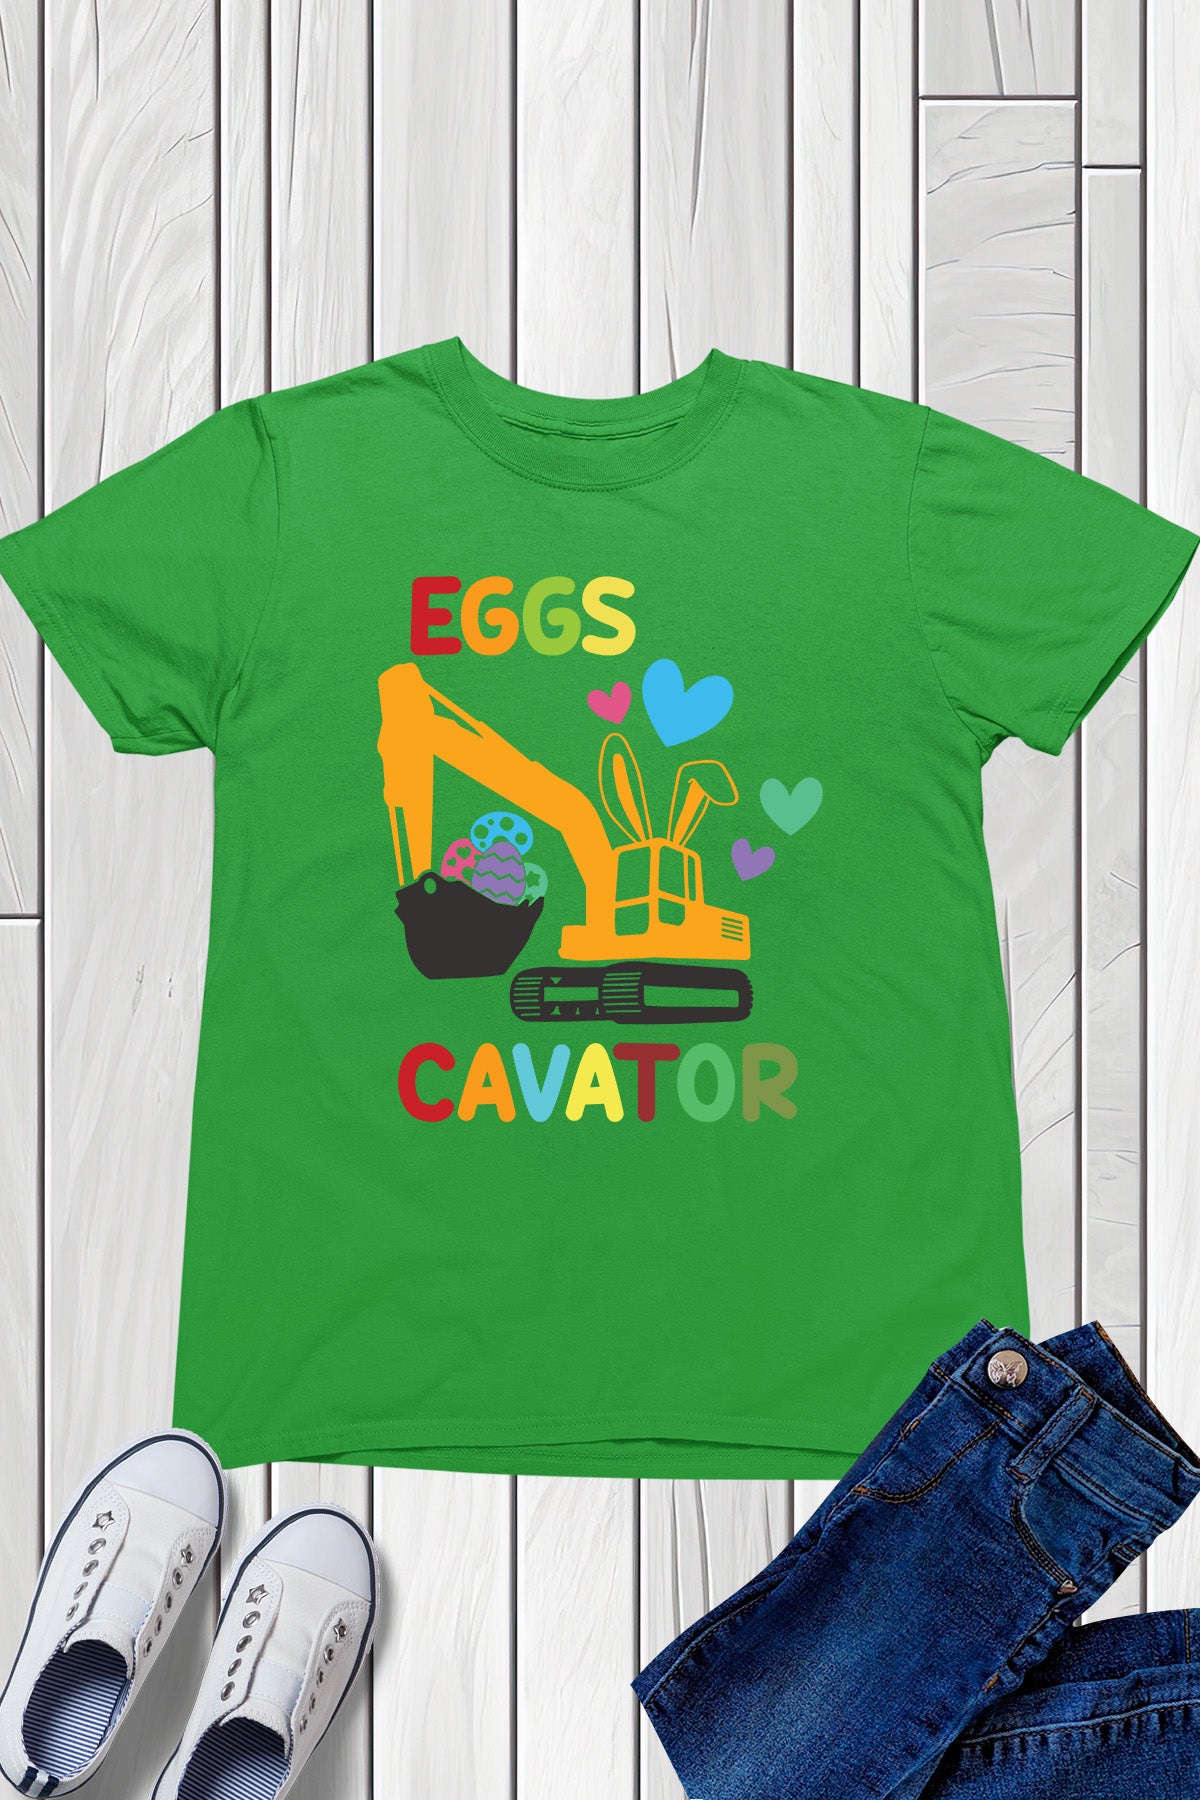 Eggs Cavator Funny Kids Easter Shirt